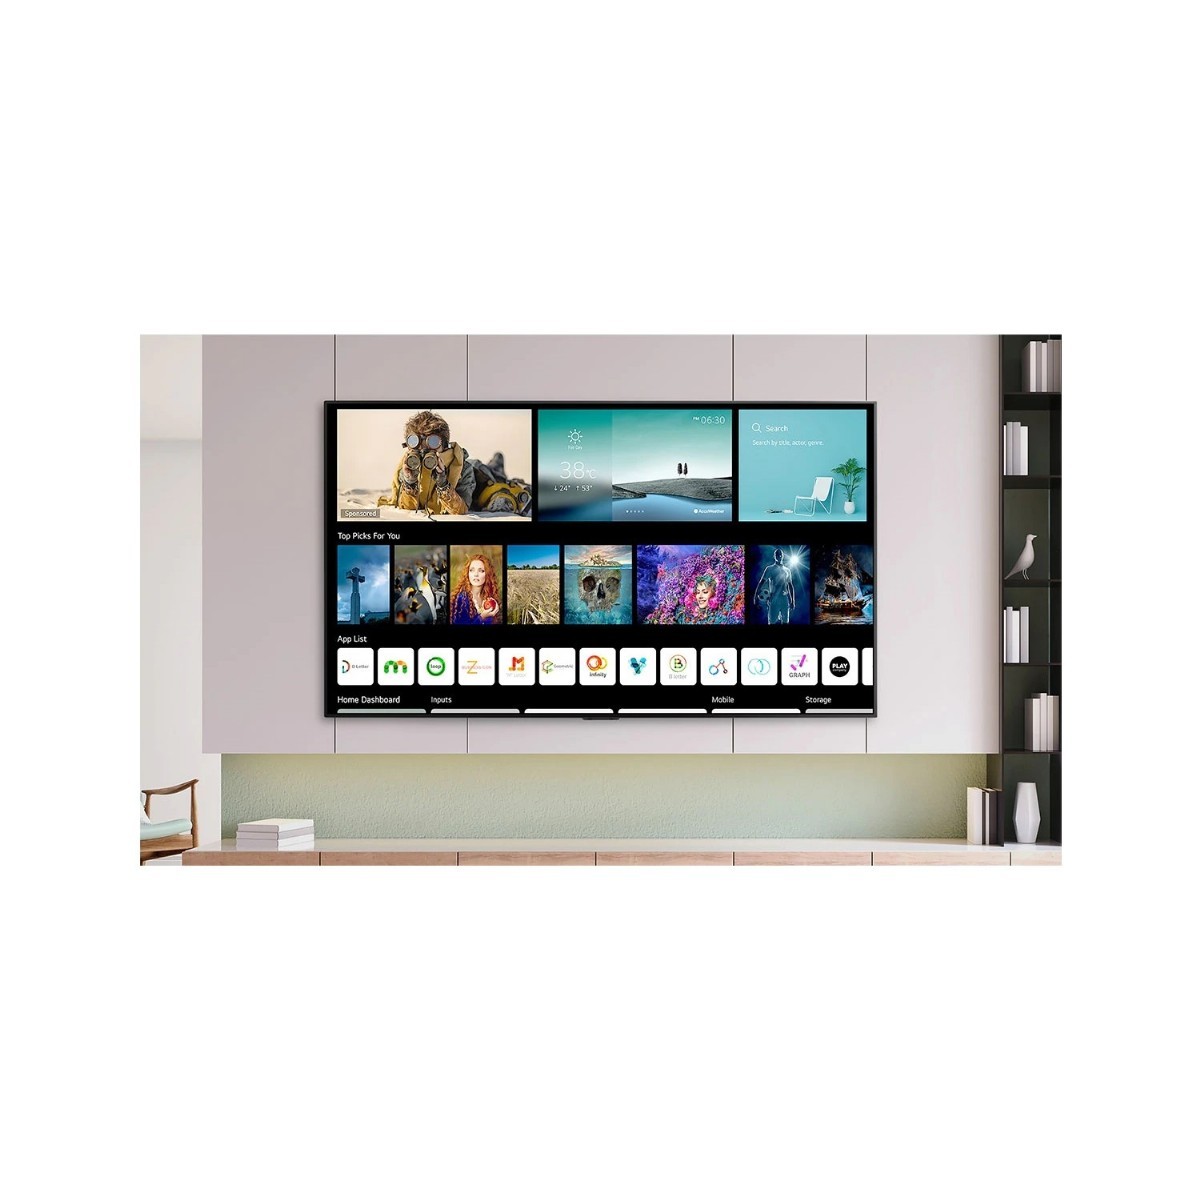 Televizyonlar | LG Nano81 NanoCell 50NANO816PA 4K Ultra HD 50